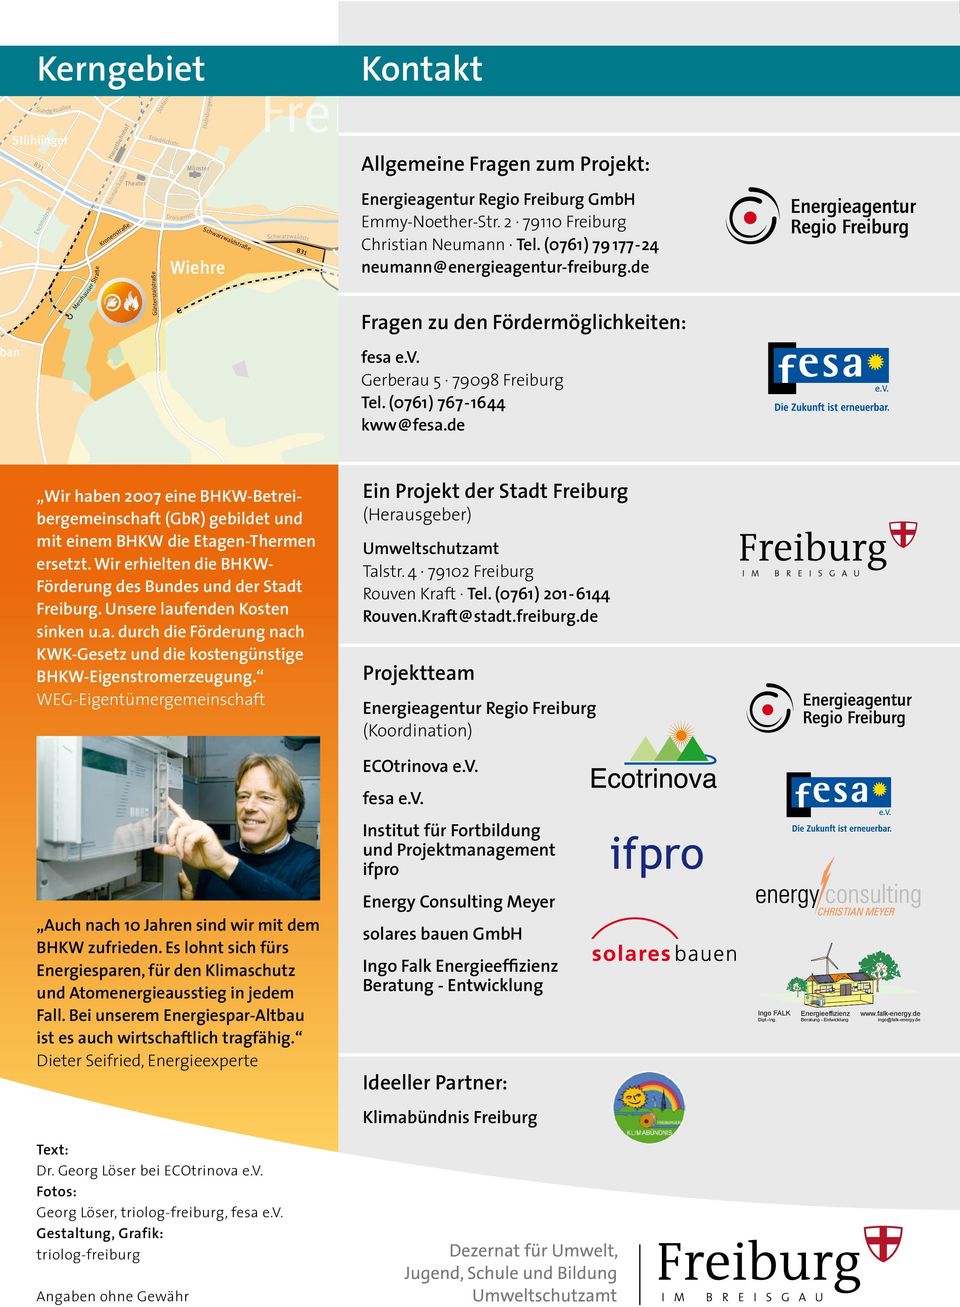 B31 Kontakt Allgemeine Fragen zum Projekt: Energieagentur Regio Freiburg GmbH Emmy-Noether-Str. 2 79110 Freiburg Christian Neumann Tel. (0761) 79 177-24 Hansjakobstr.